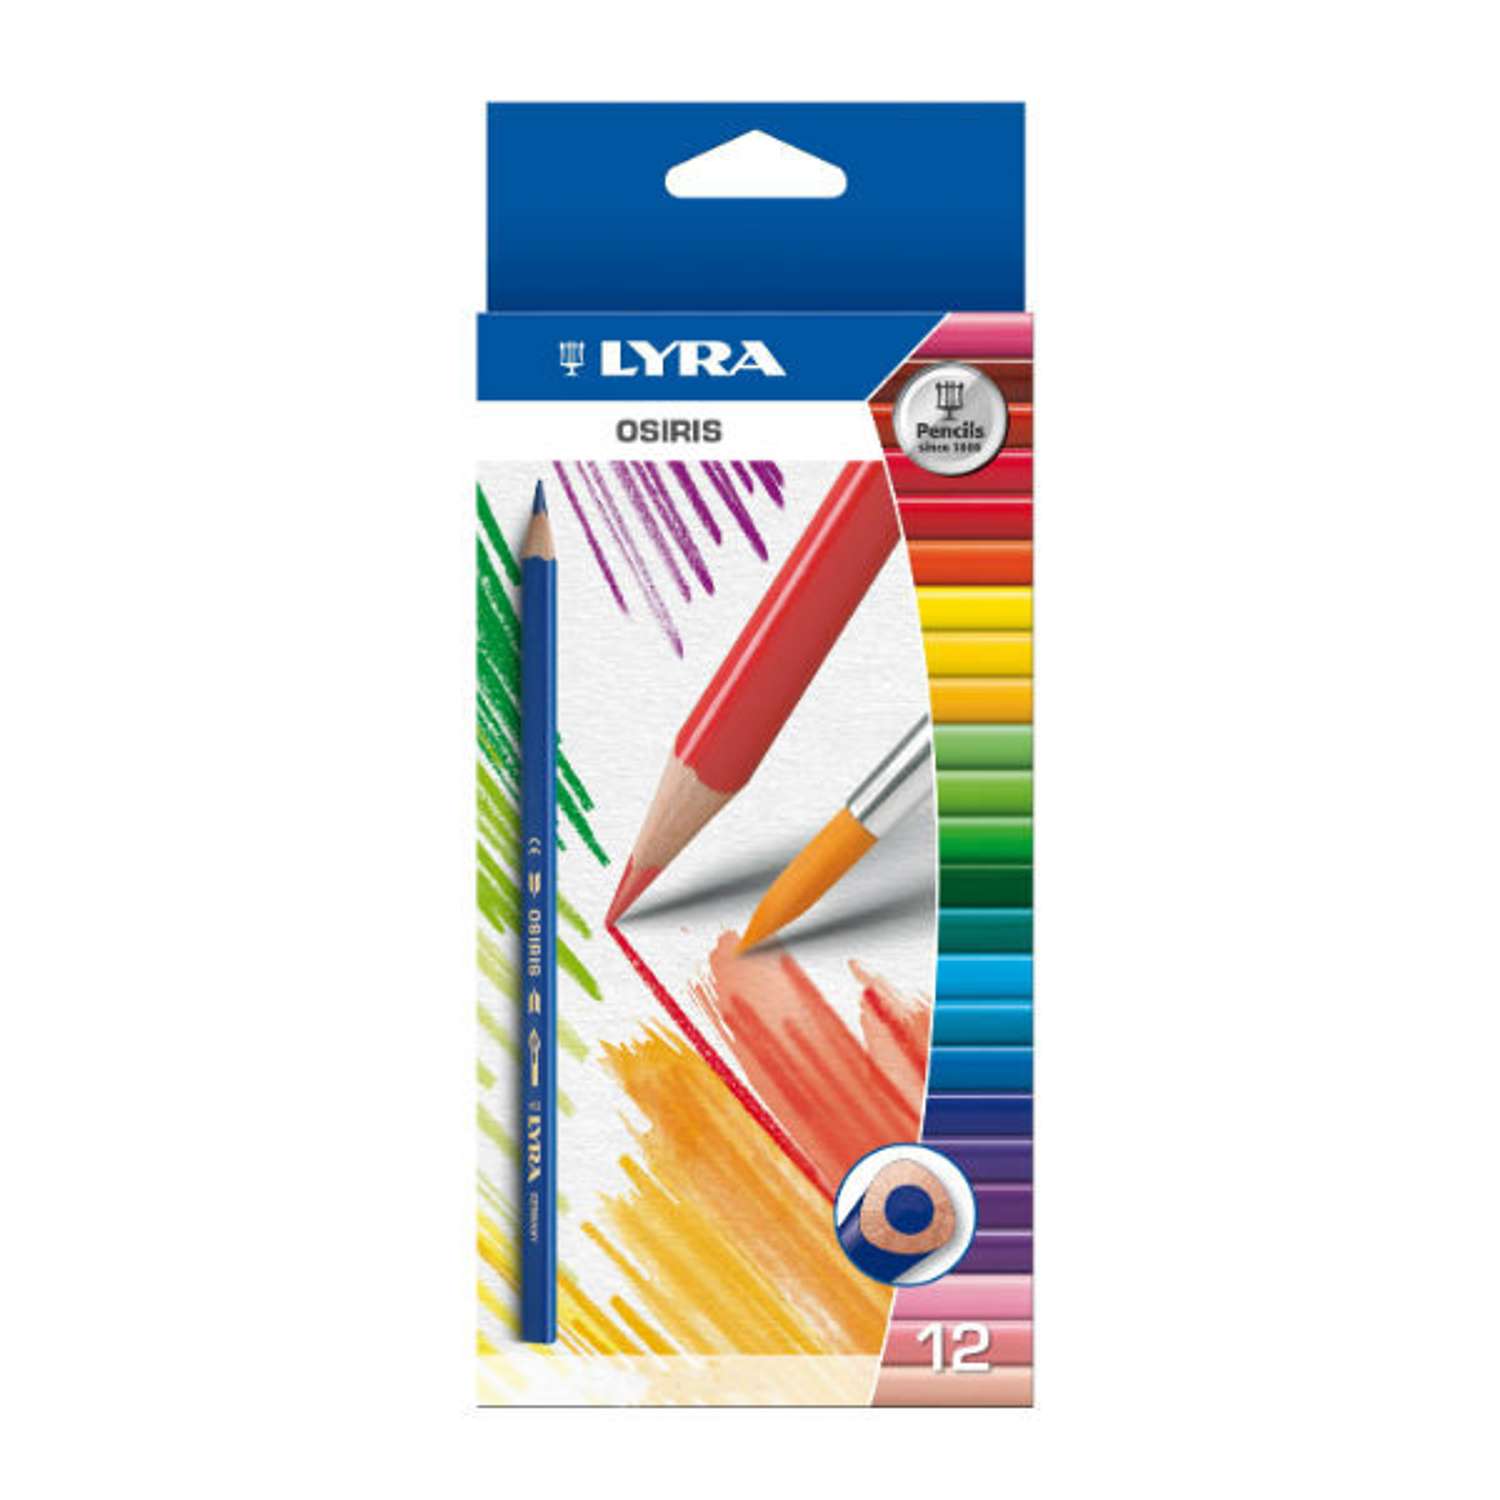 Цветные карандаши Lyra Osiris треугольные (грифель 28 мм) 12 цветов - фото 1